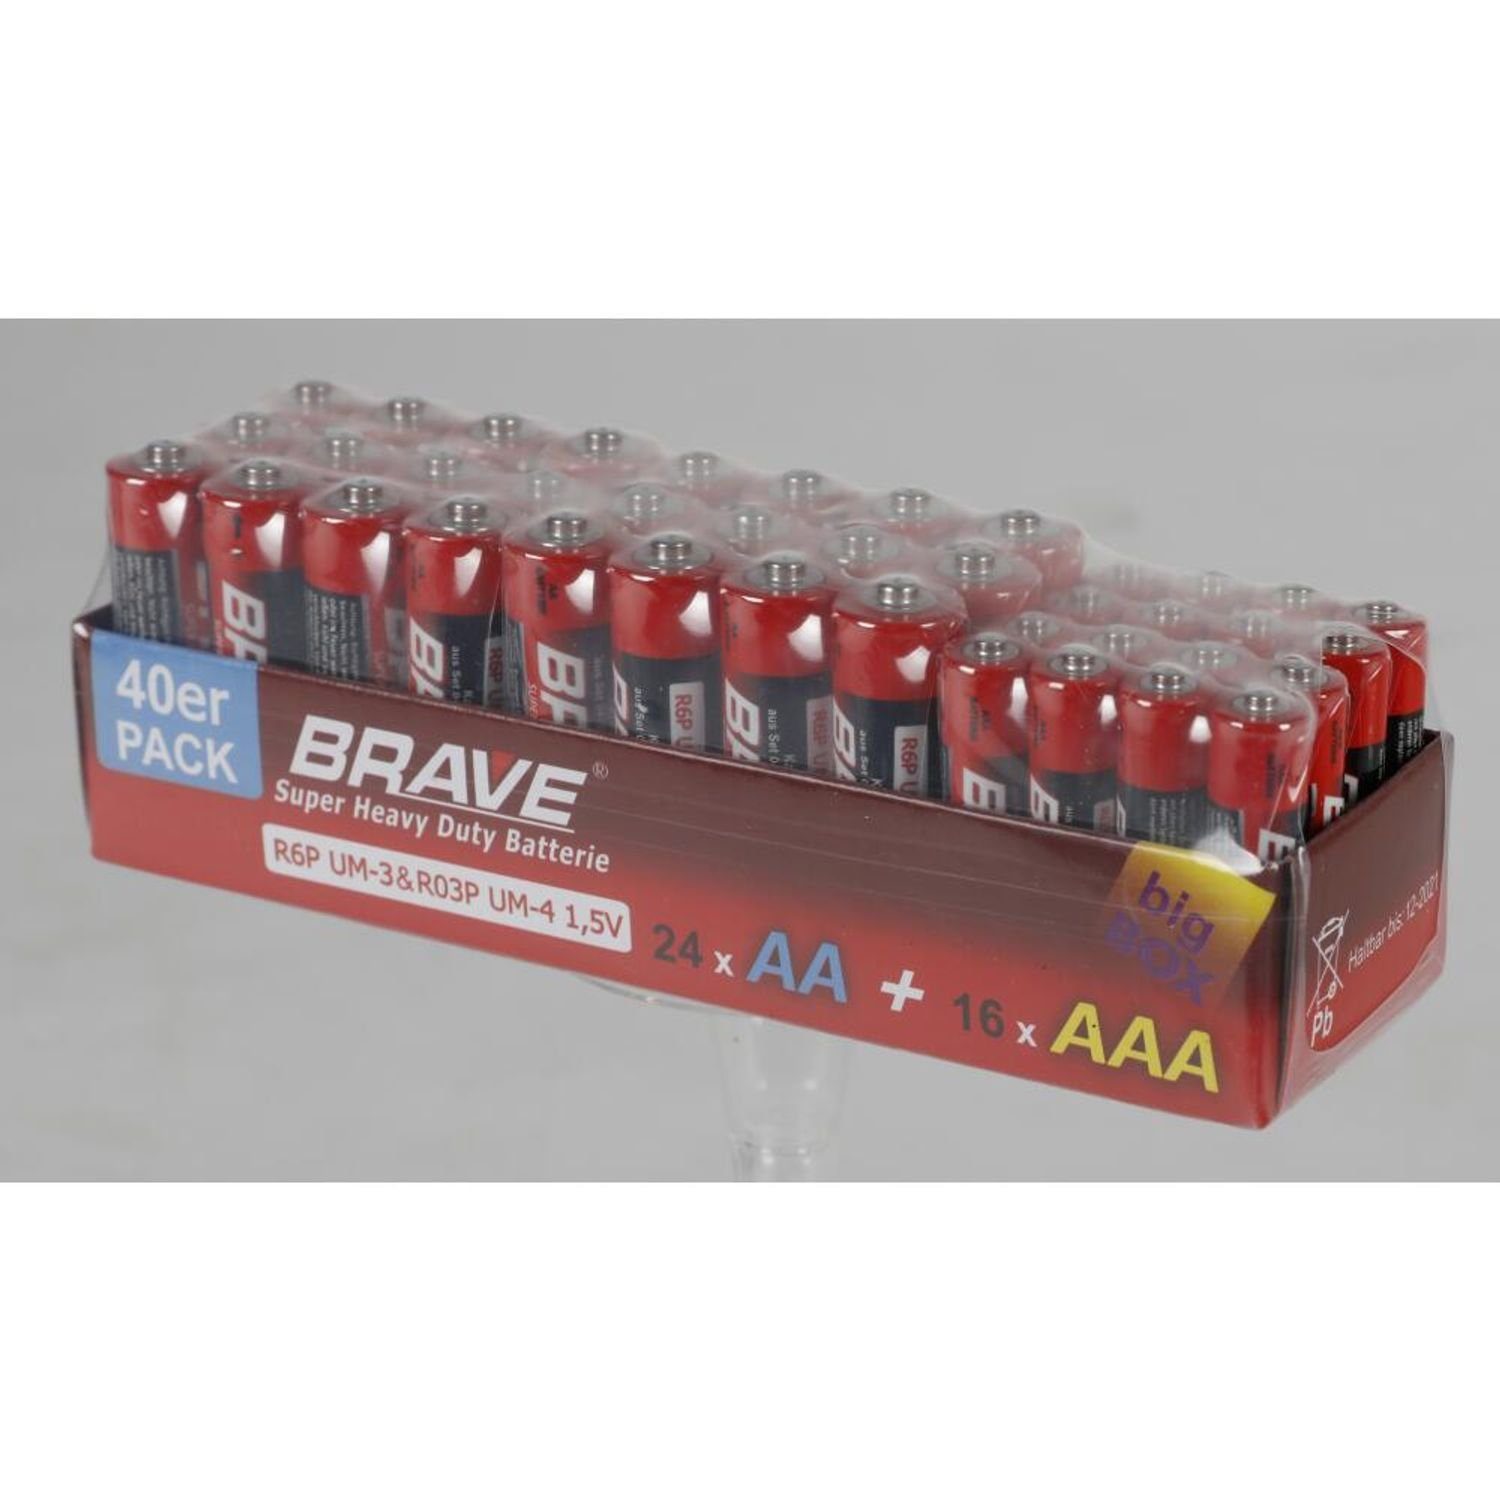 BURI 24x 40er-Pack Brave Batterien Großpackung (960 St) & Stück AA AAA 960 Batterie